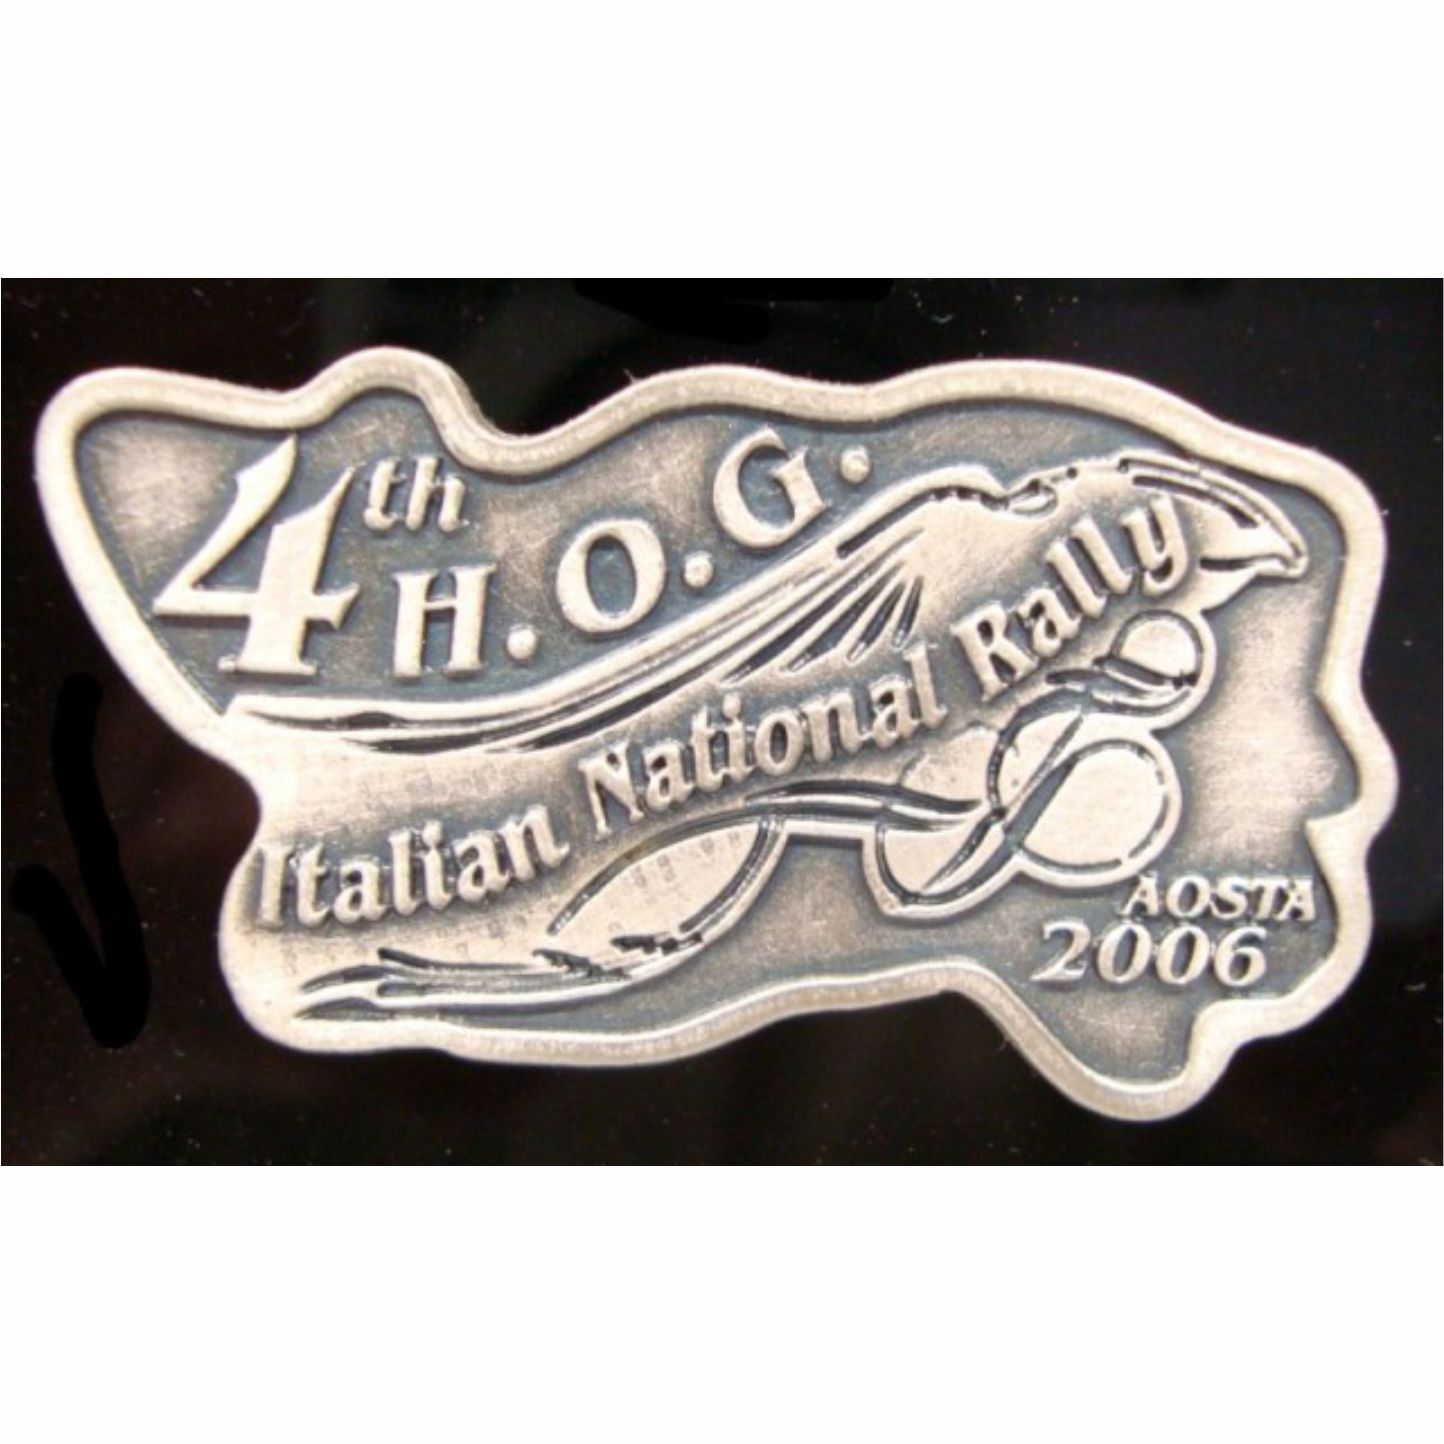 Spilla Italian H.O.G. Rally 2006